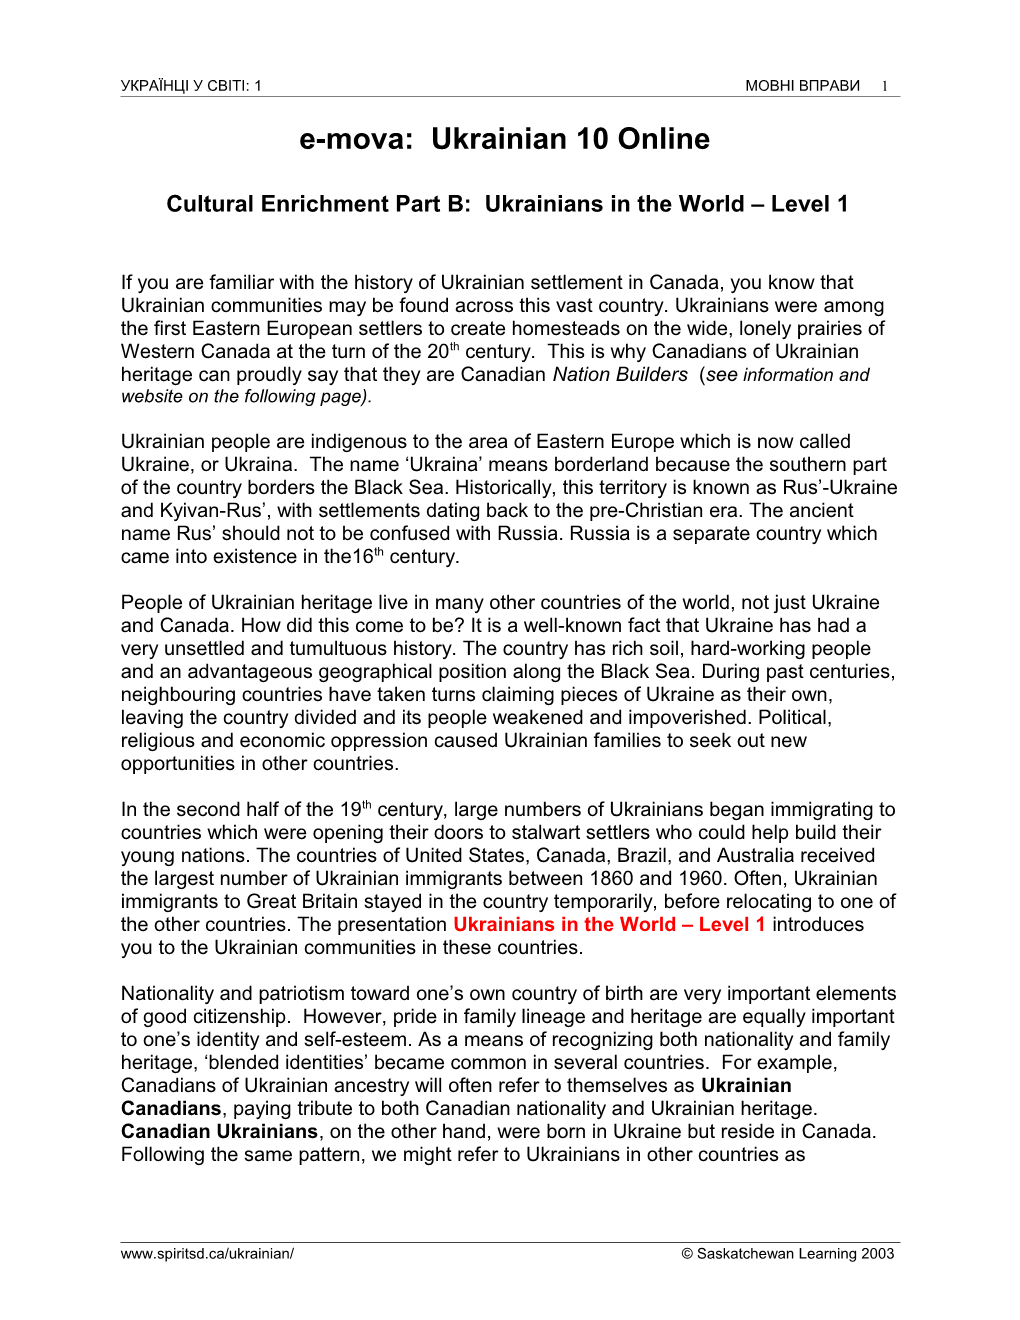 Cultural Enrichment Part B: Ukrainians in the World Level 1